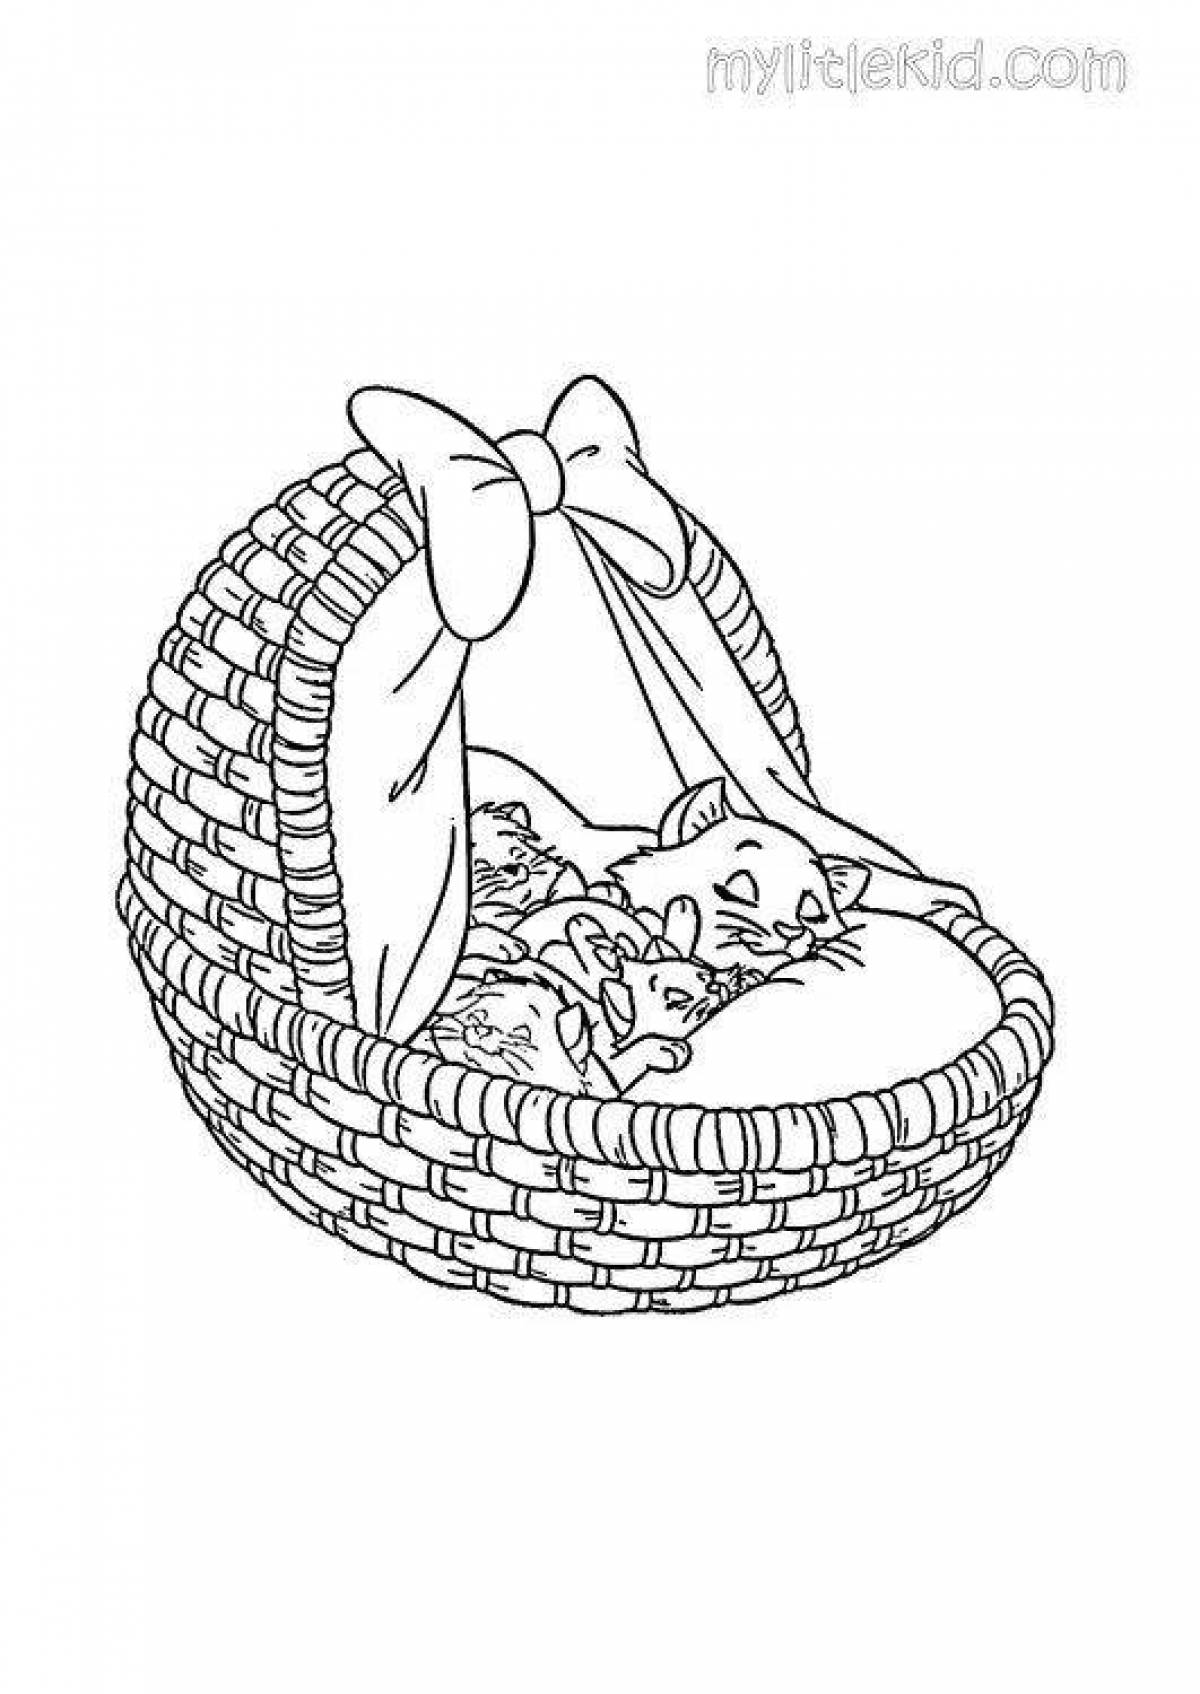 Sweet kittens in a basket